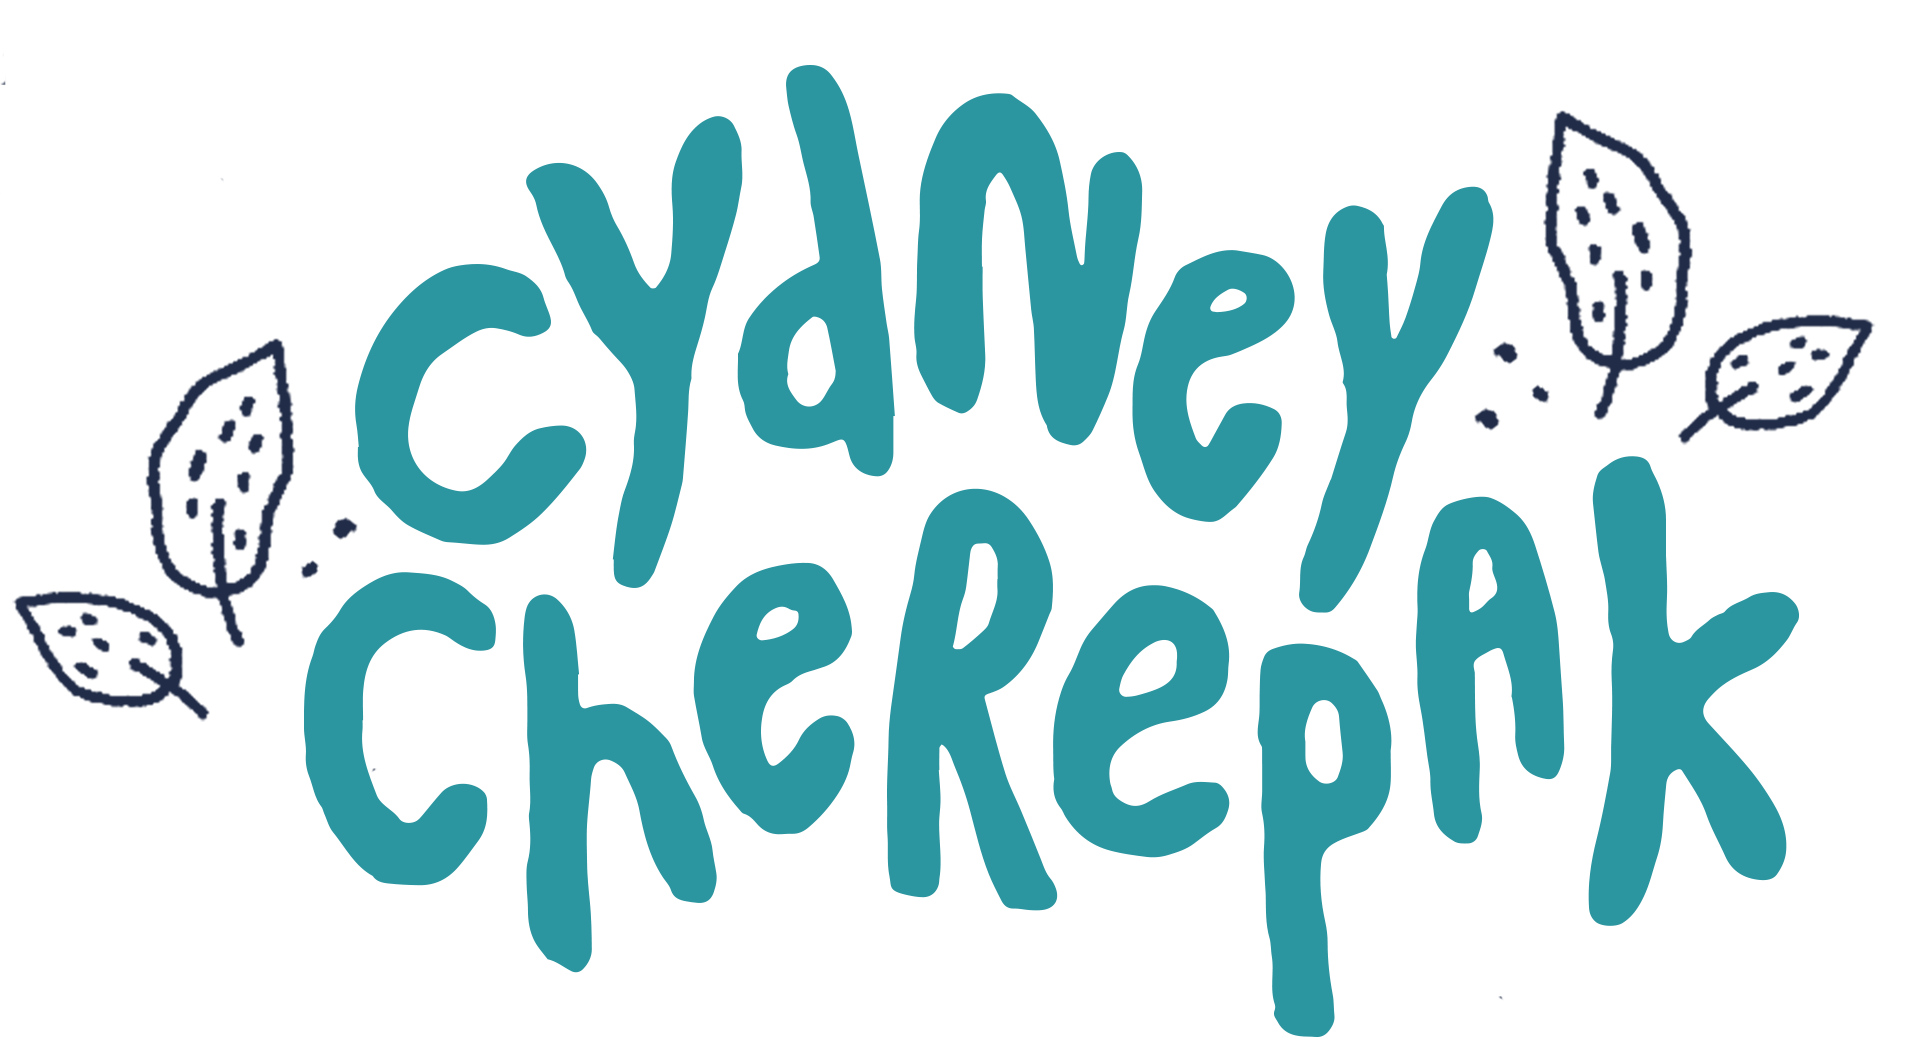 Cydney  Cherepak